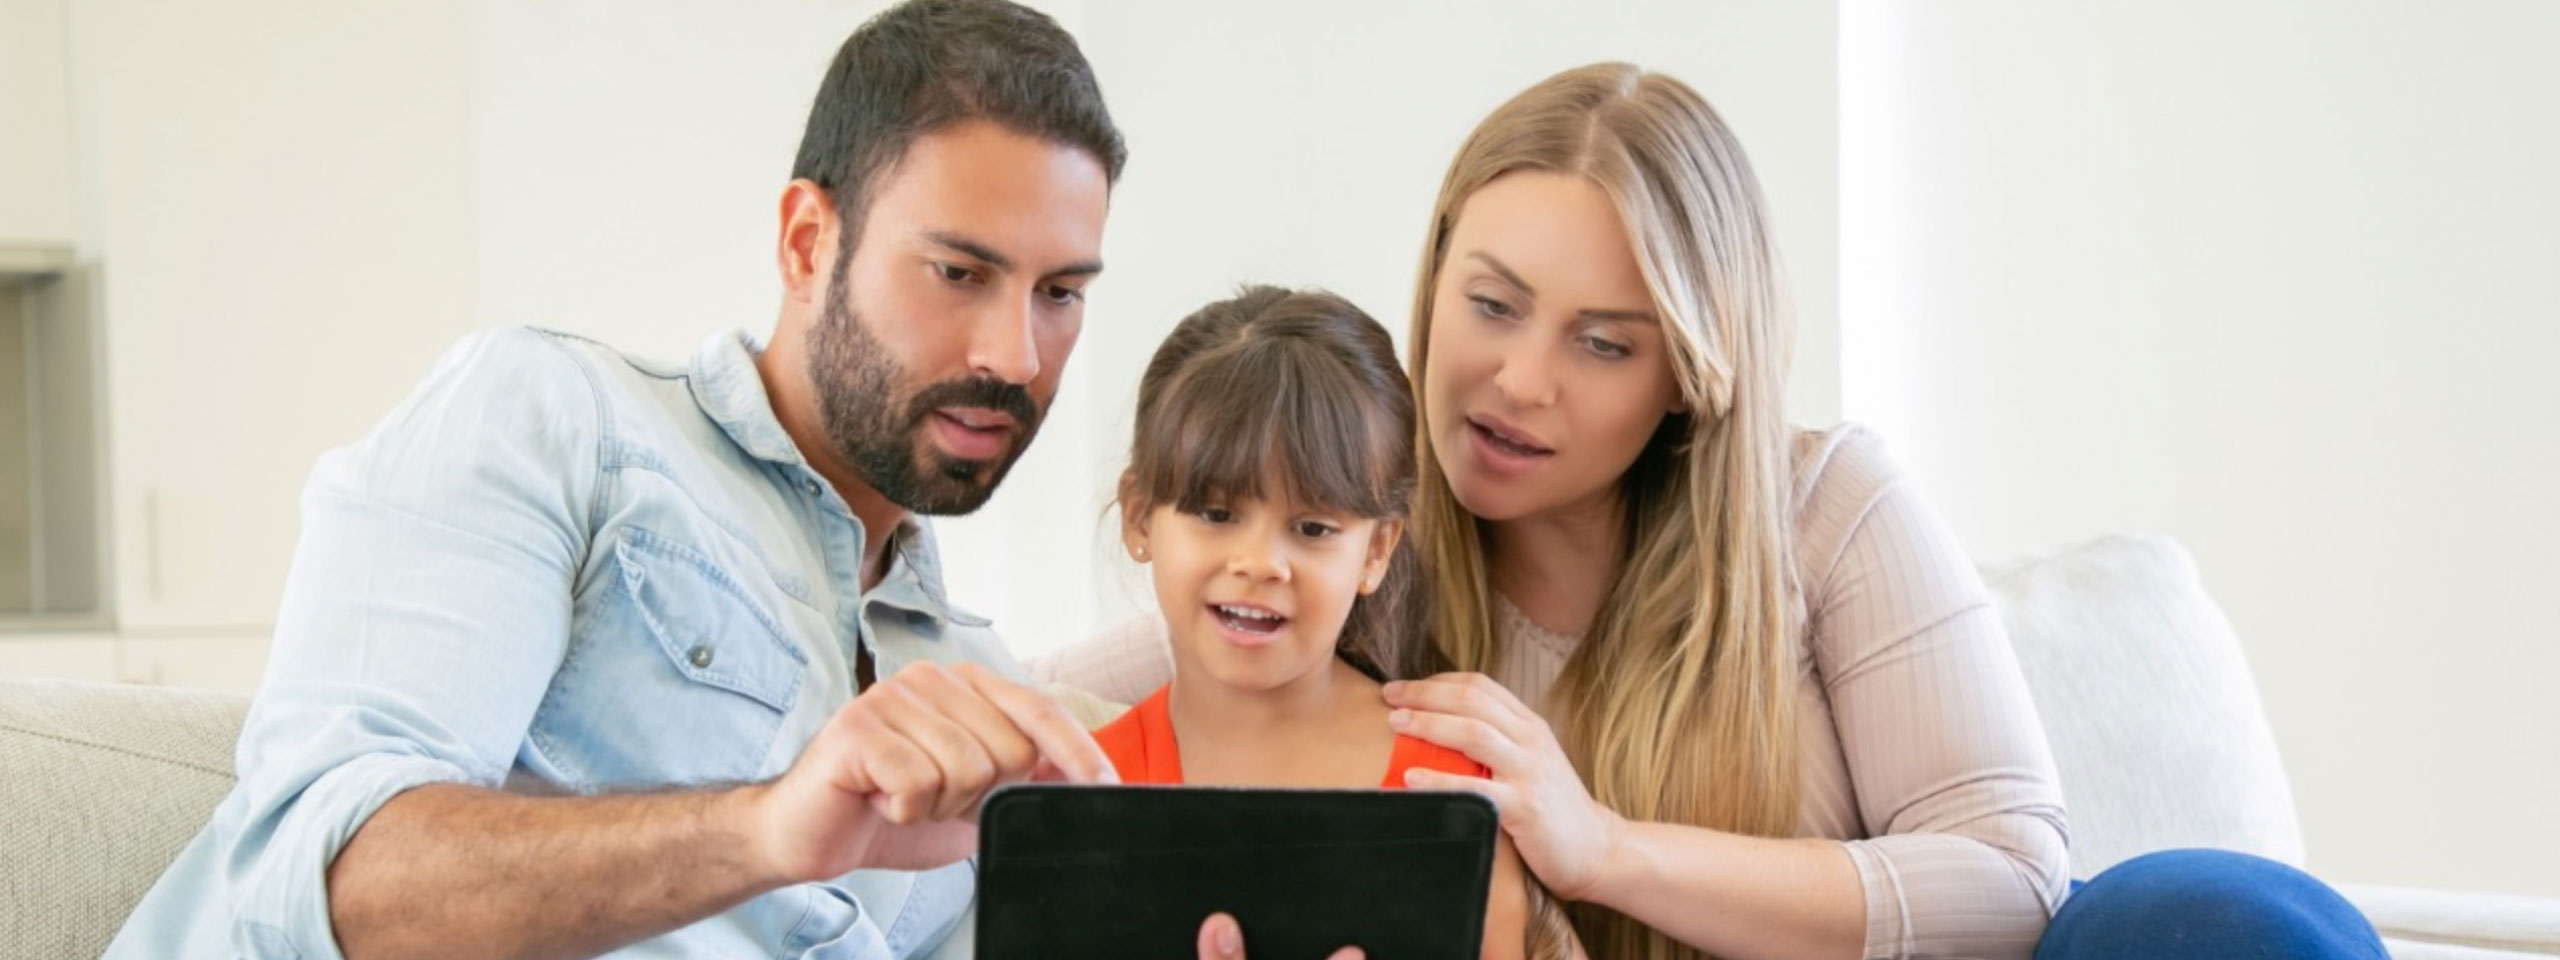 7 Usos de la tecnología para fortalecer los lazos familiares